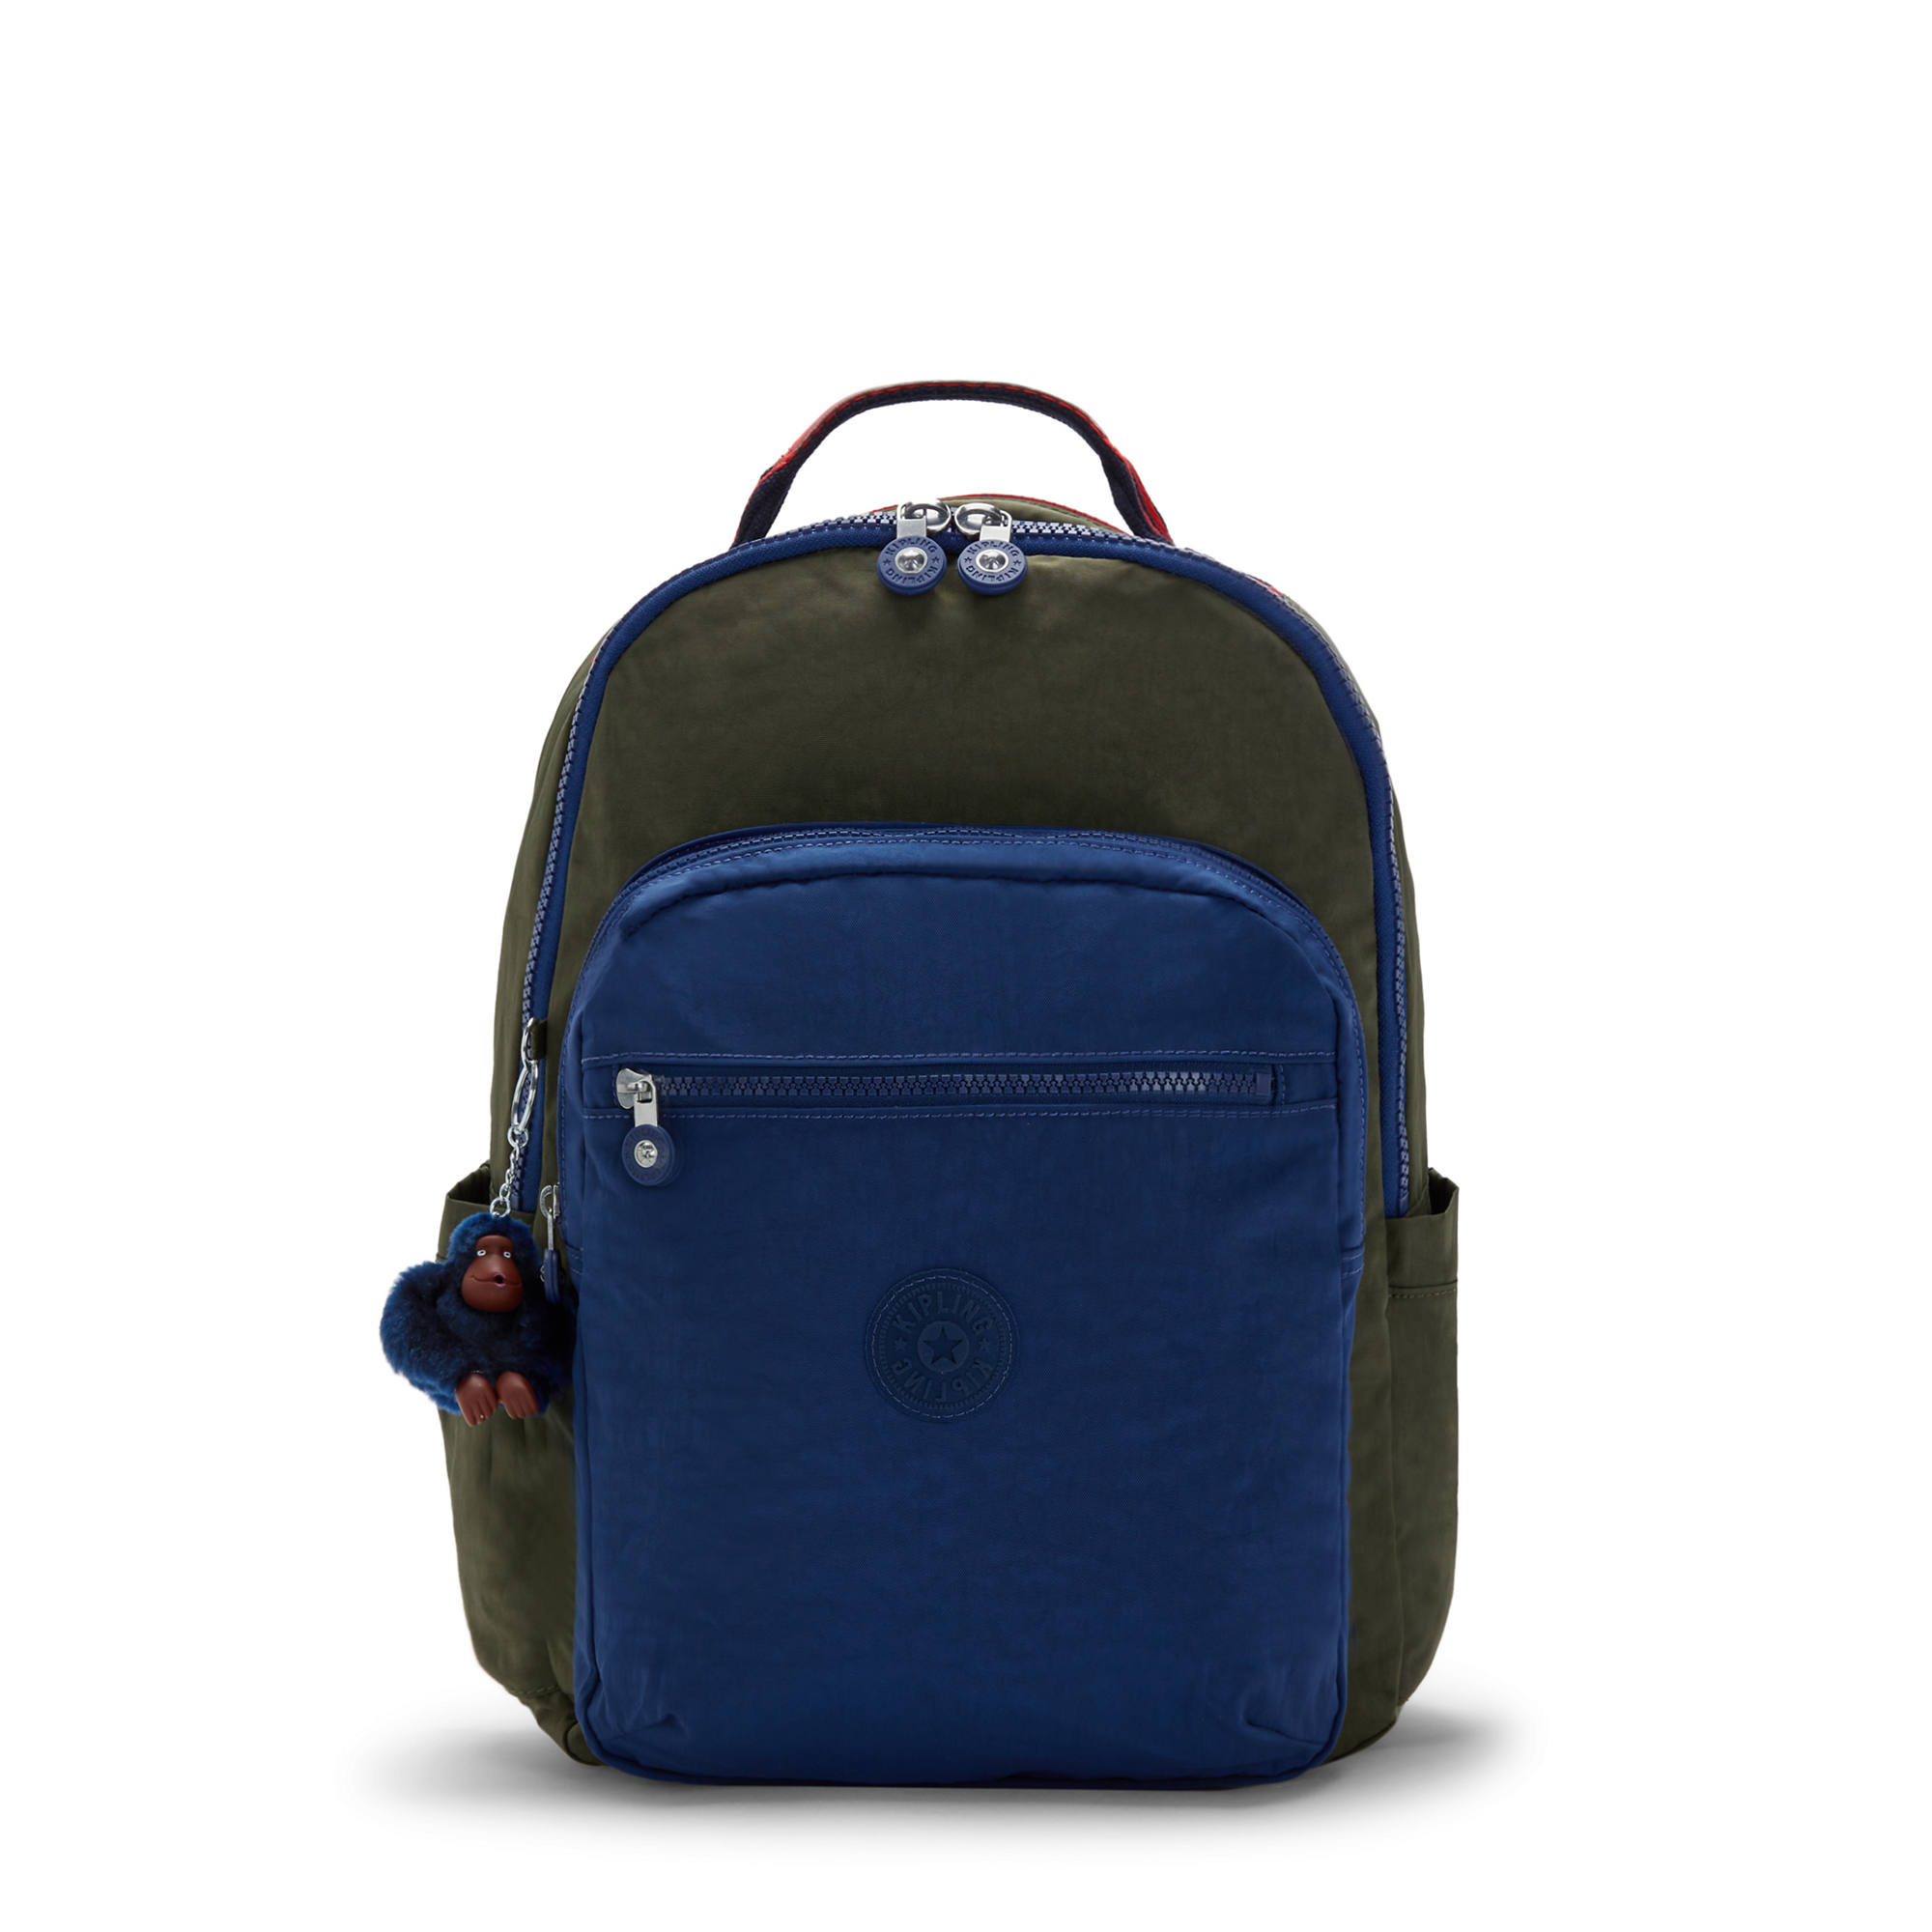 Kipling Flash Sale: 30% off on Select Backpacks